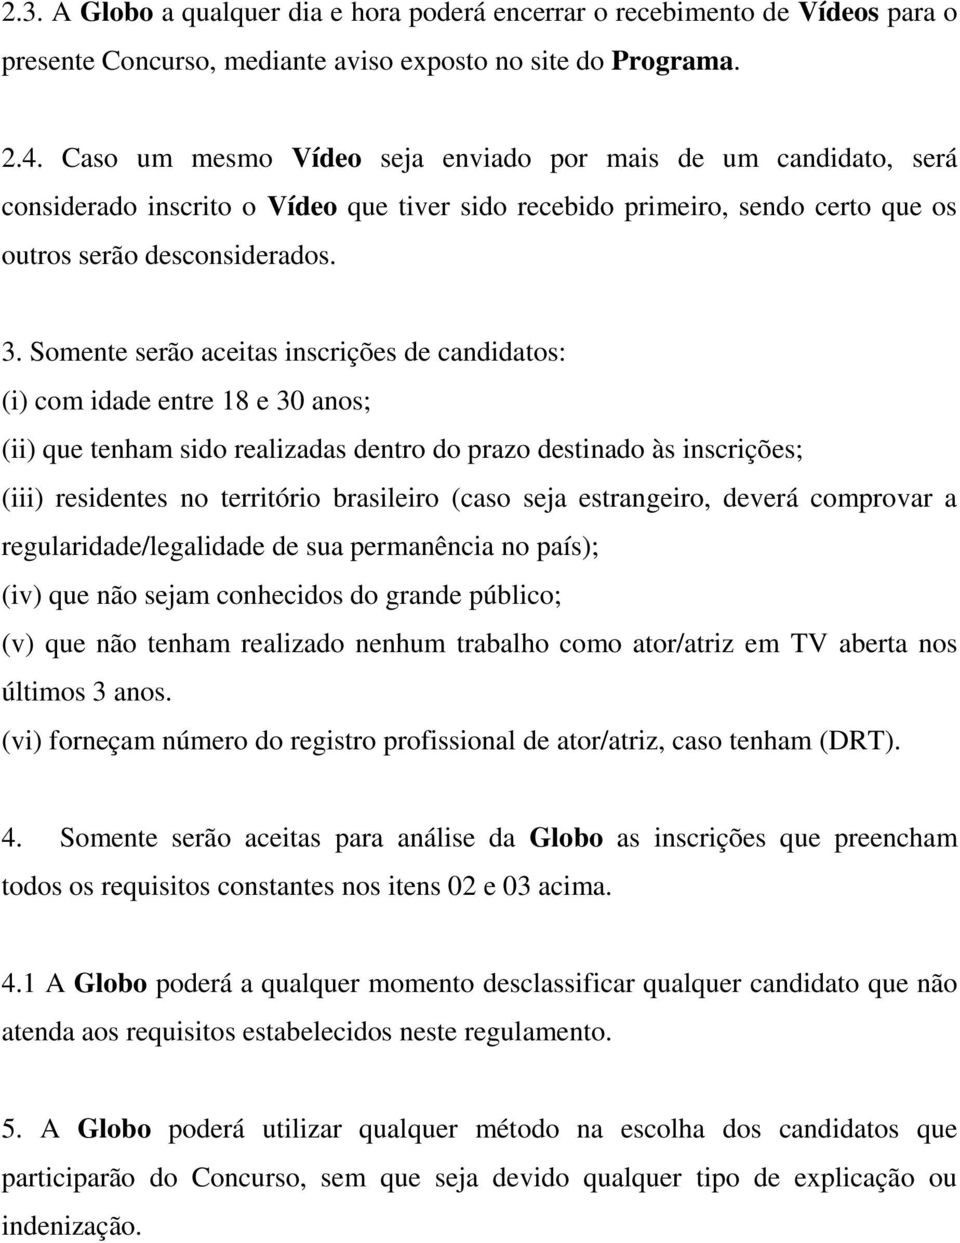 Somente serão aceitas inscrições de candidatos: (i) com idade entre 18 e 30 anos; (ii) que tenham sido realizadas dentro do prazo destinado às inscrições; (iii) residentes no território brasileiro